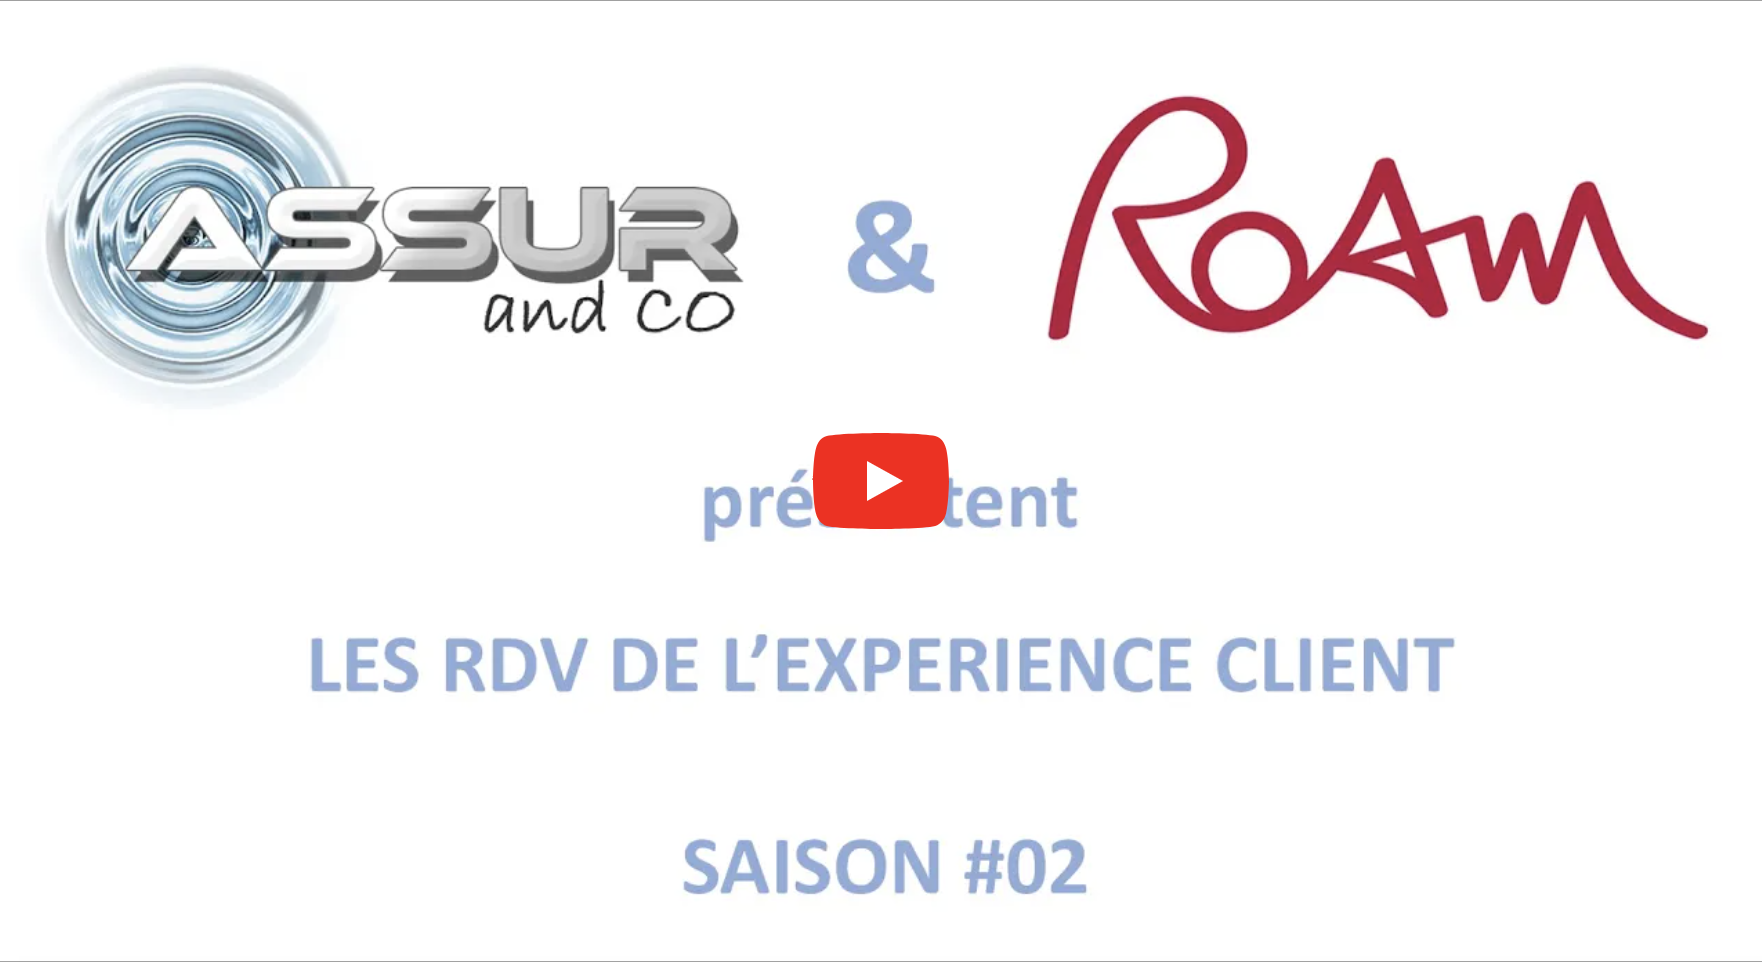 Assur and Co et ROAM présentent Le RDV de l'expérience client saison #02